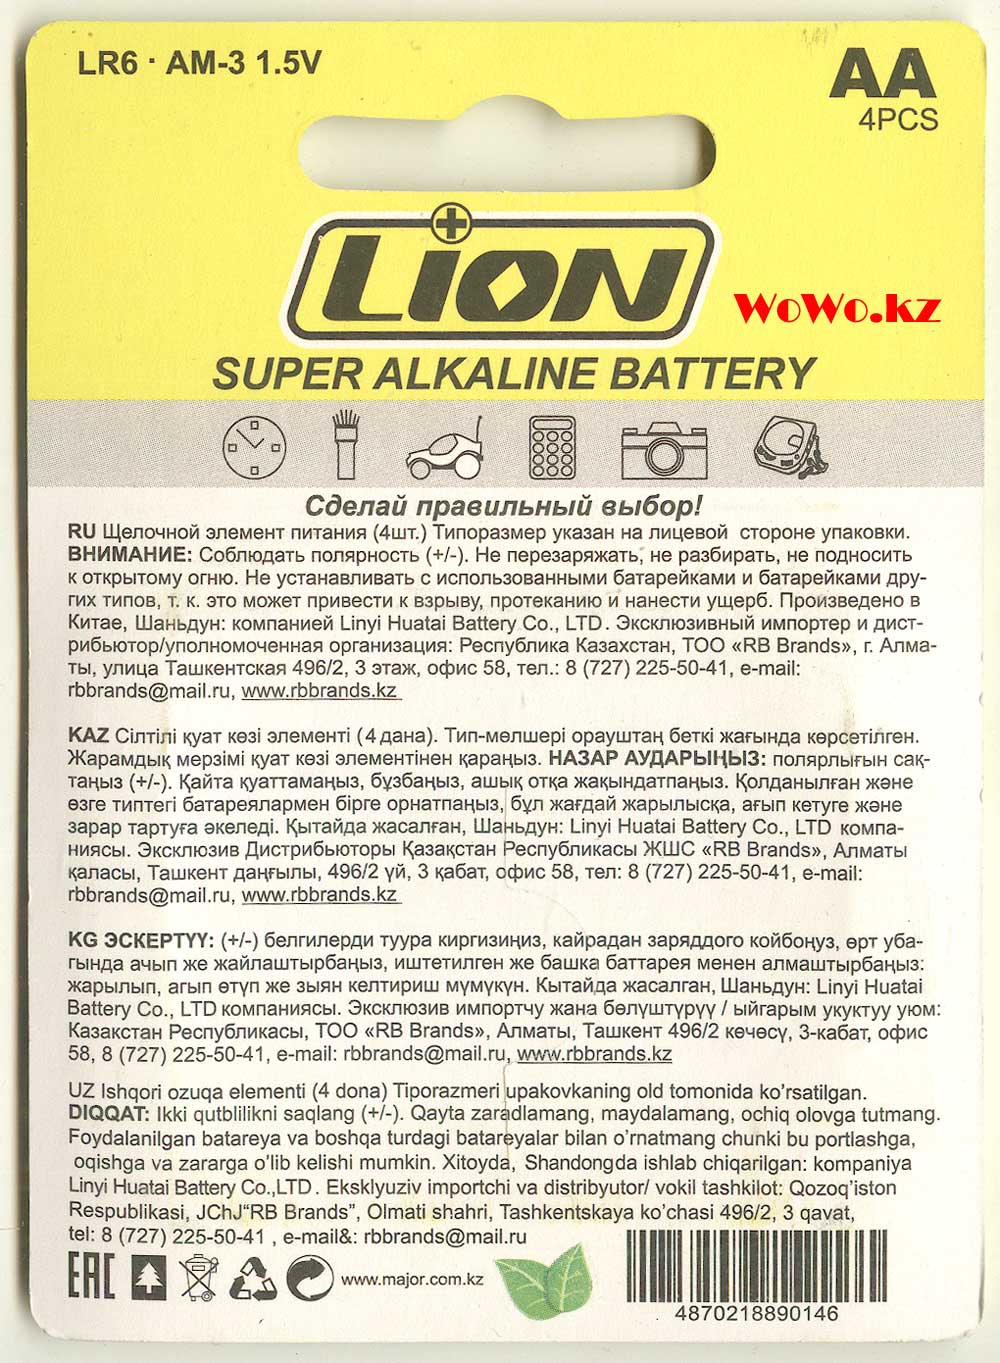 Вся информация на АА батарейки Lion LR6 набор из 4 штук, качество какое